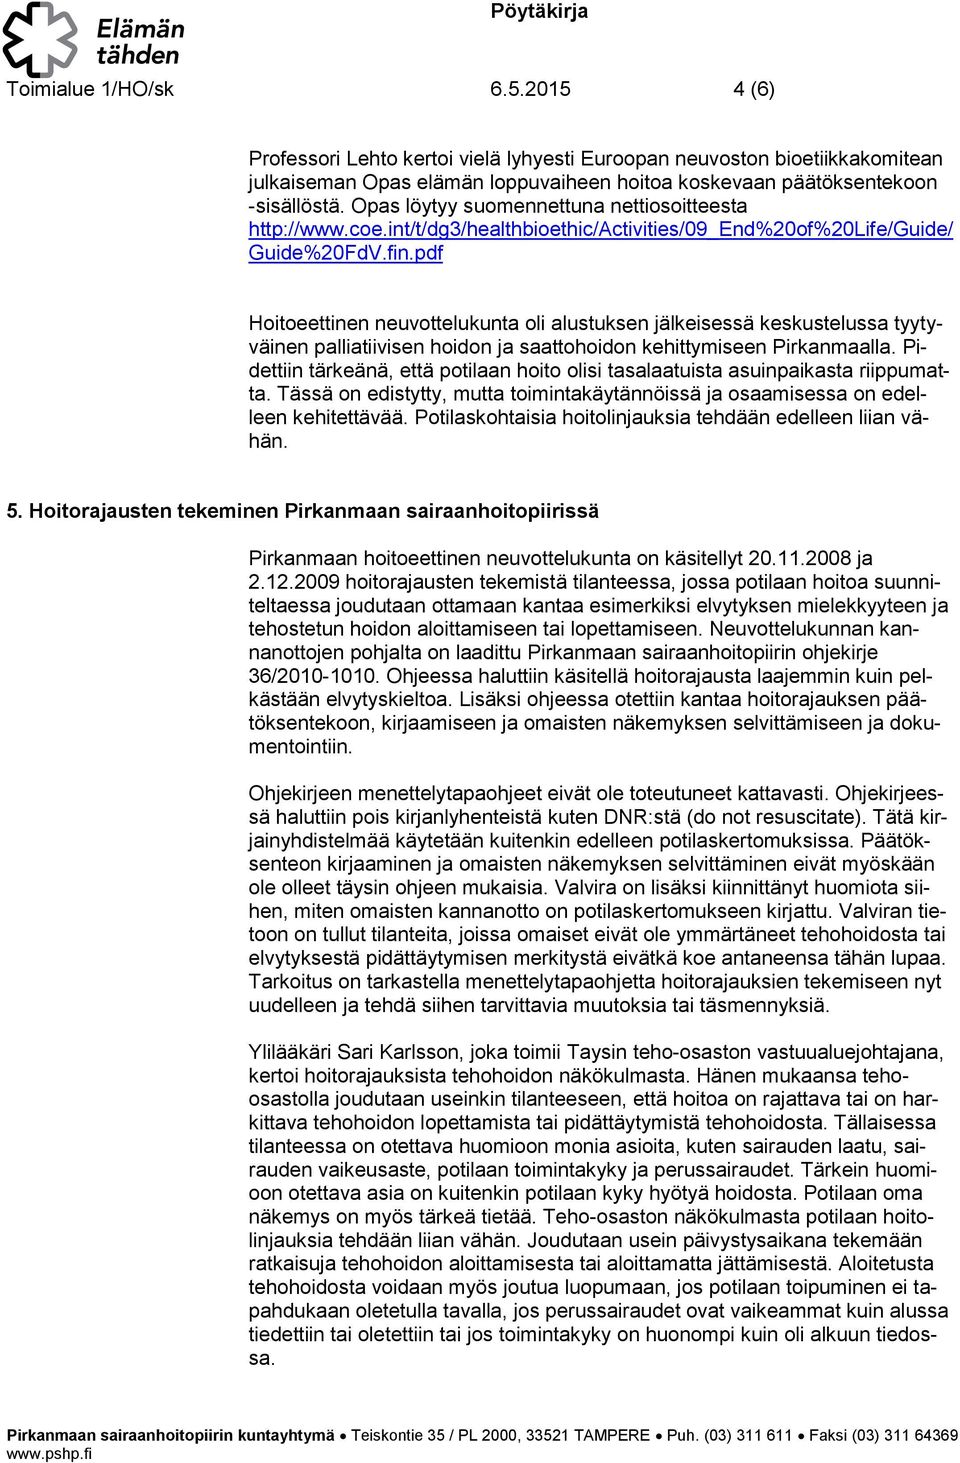 pdf Hiteettinen neuvttelukunta li alustuksen jälkeisessä keskustelussa tyytyväinen palliatiivisen hidn ja saatthidn kehittymiseen Pirkanmaalla.